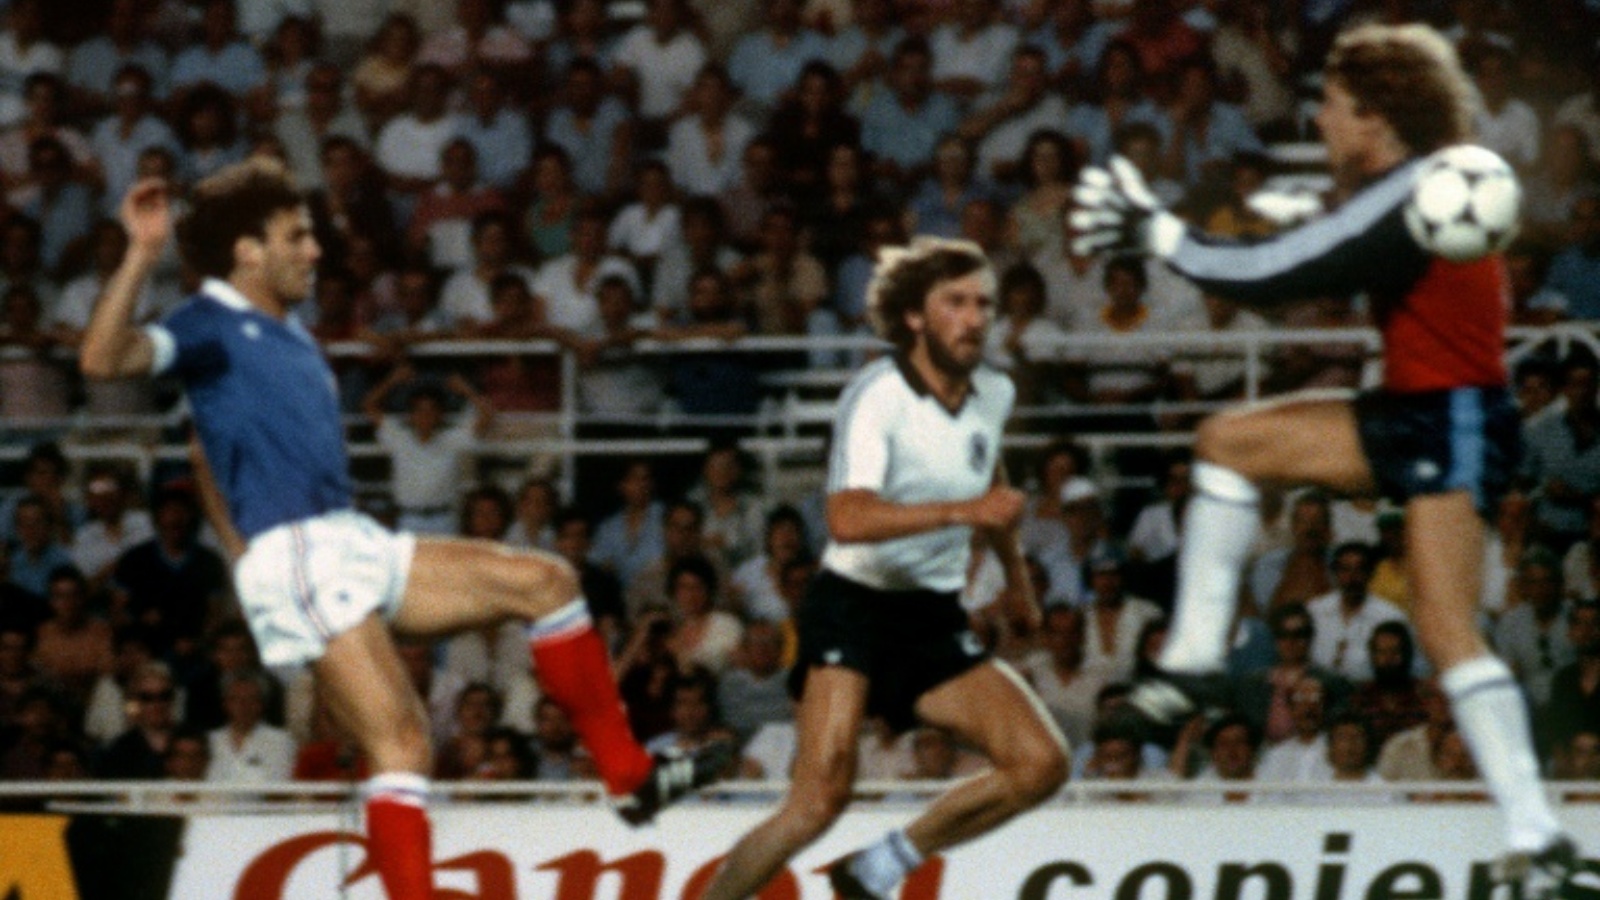 الحارس الألماني طوني شوماخر في طريقه نحو الفرنسي باتريك باتيستون خلال مباراة المنتخبين ضمن كأس العالم في كرة القدم 1982.